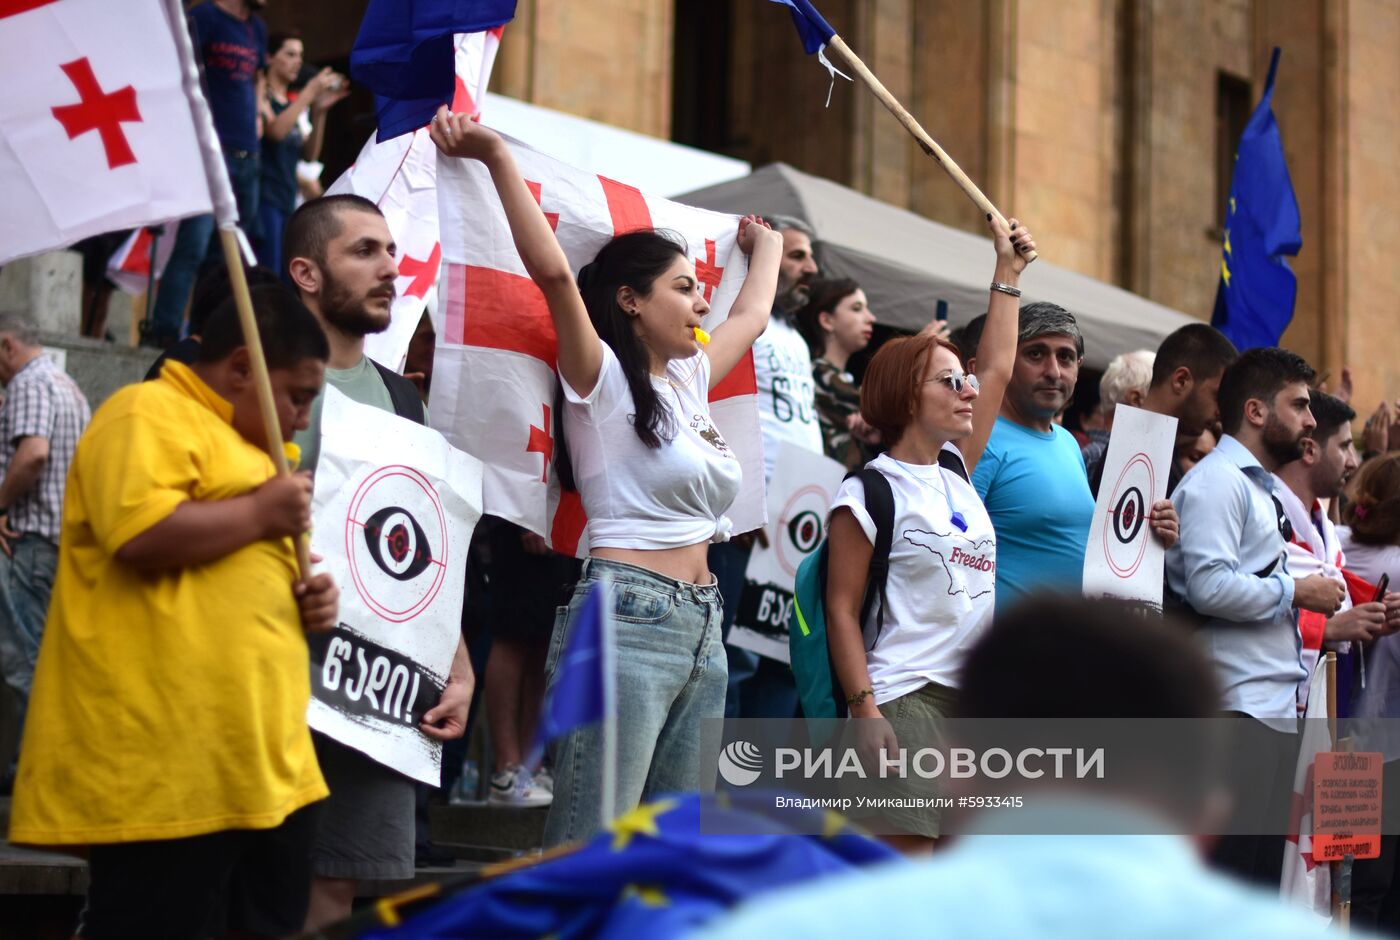 "Марш свободы" в Тбилиси